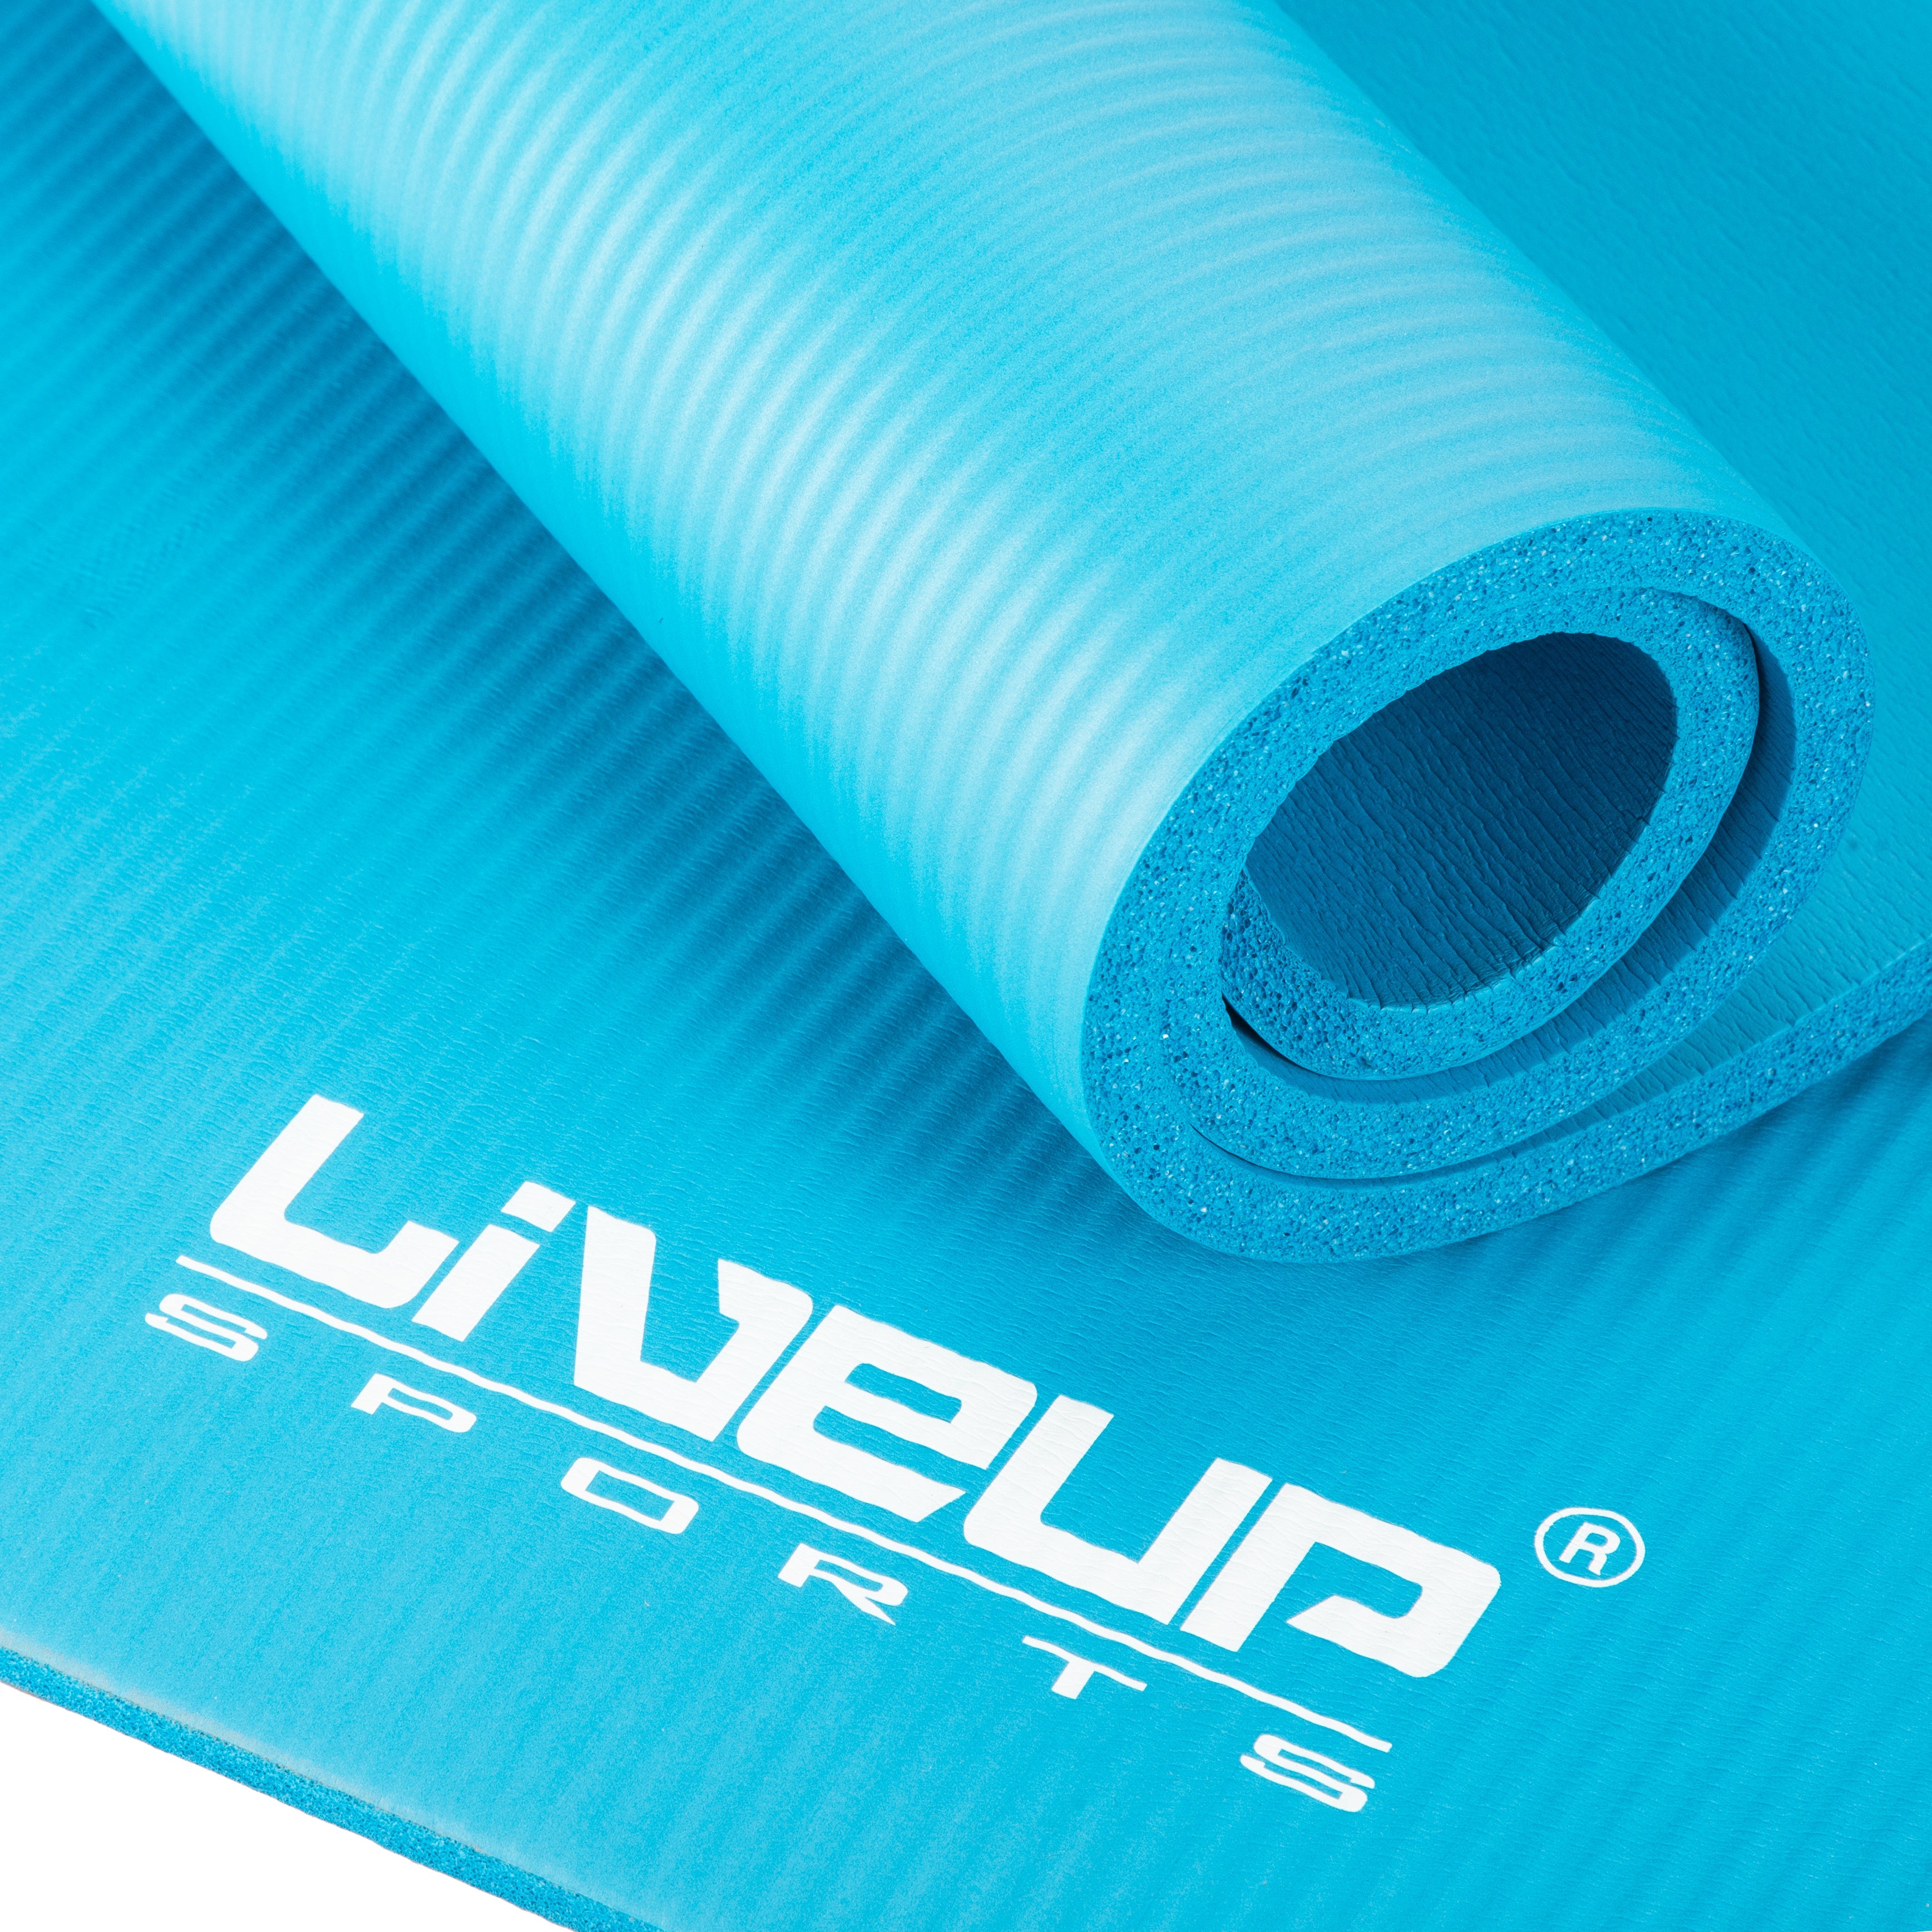 Non-Slip Yoga Mat 1.2 cm - Live Up Sports